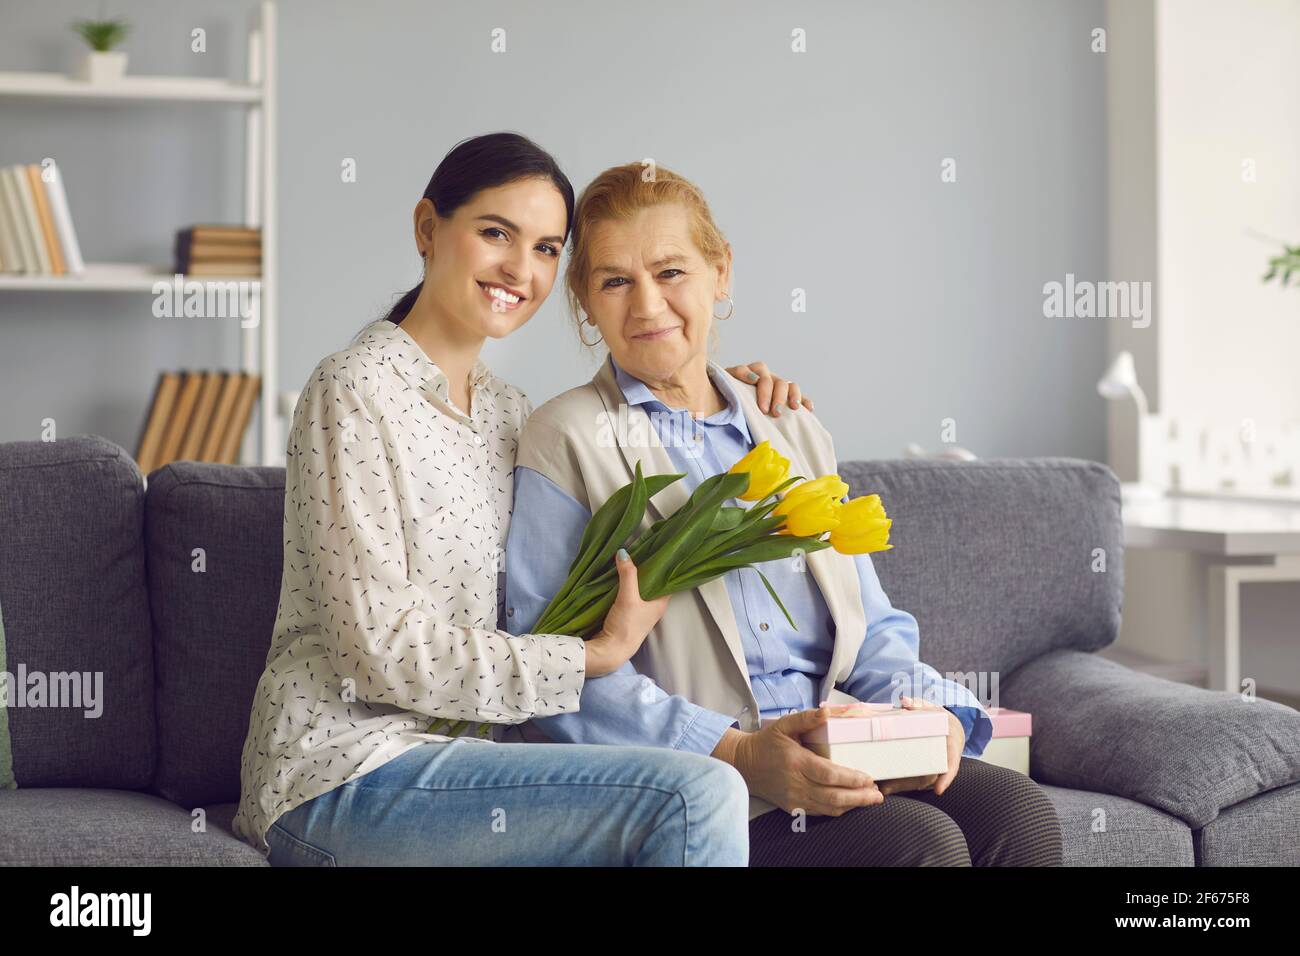 Retrato de una joven hija con flor abrazando a una madre anciana Foto de stock